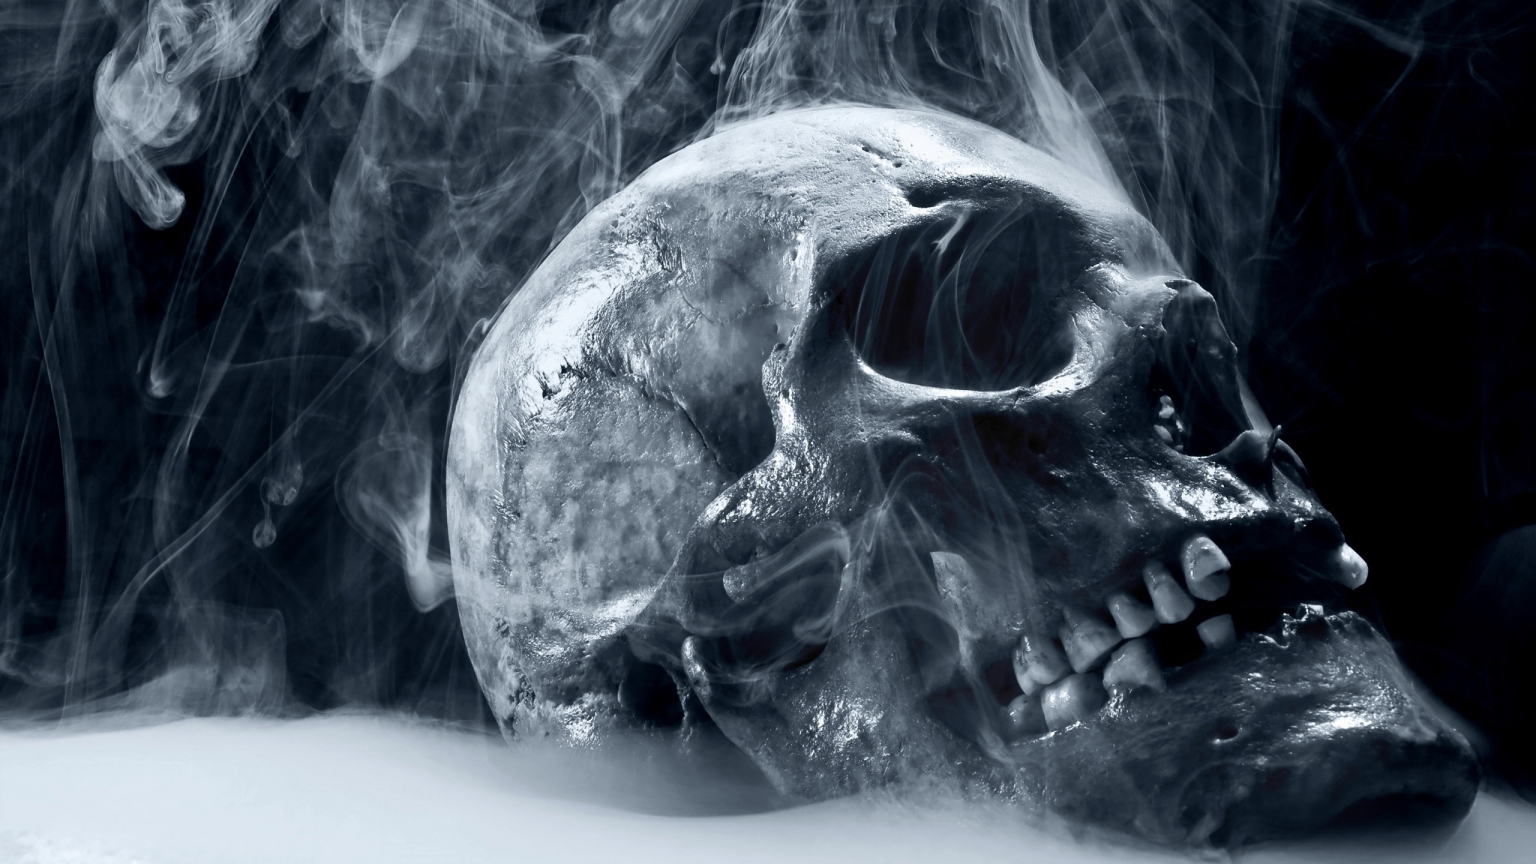 Skull Smoking for 1536 x 864 HDTV resolution